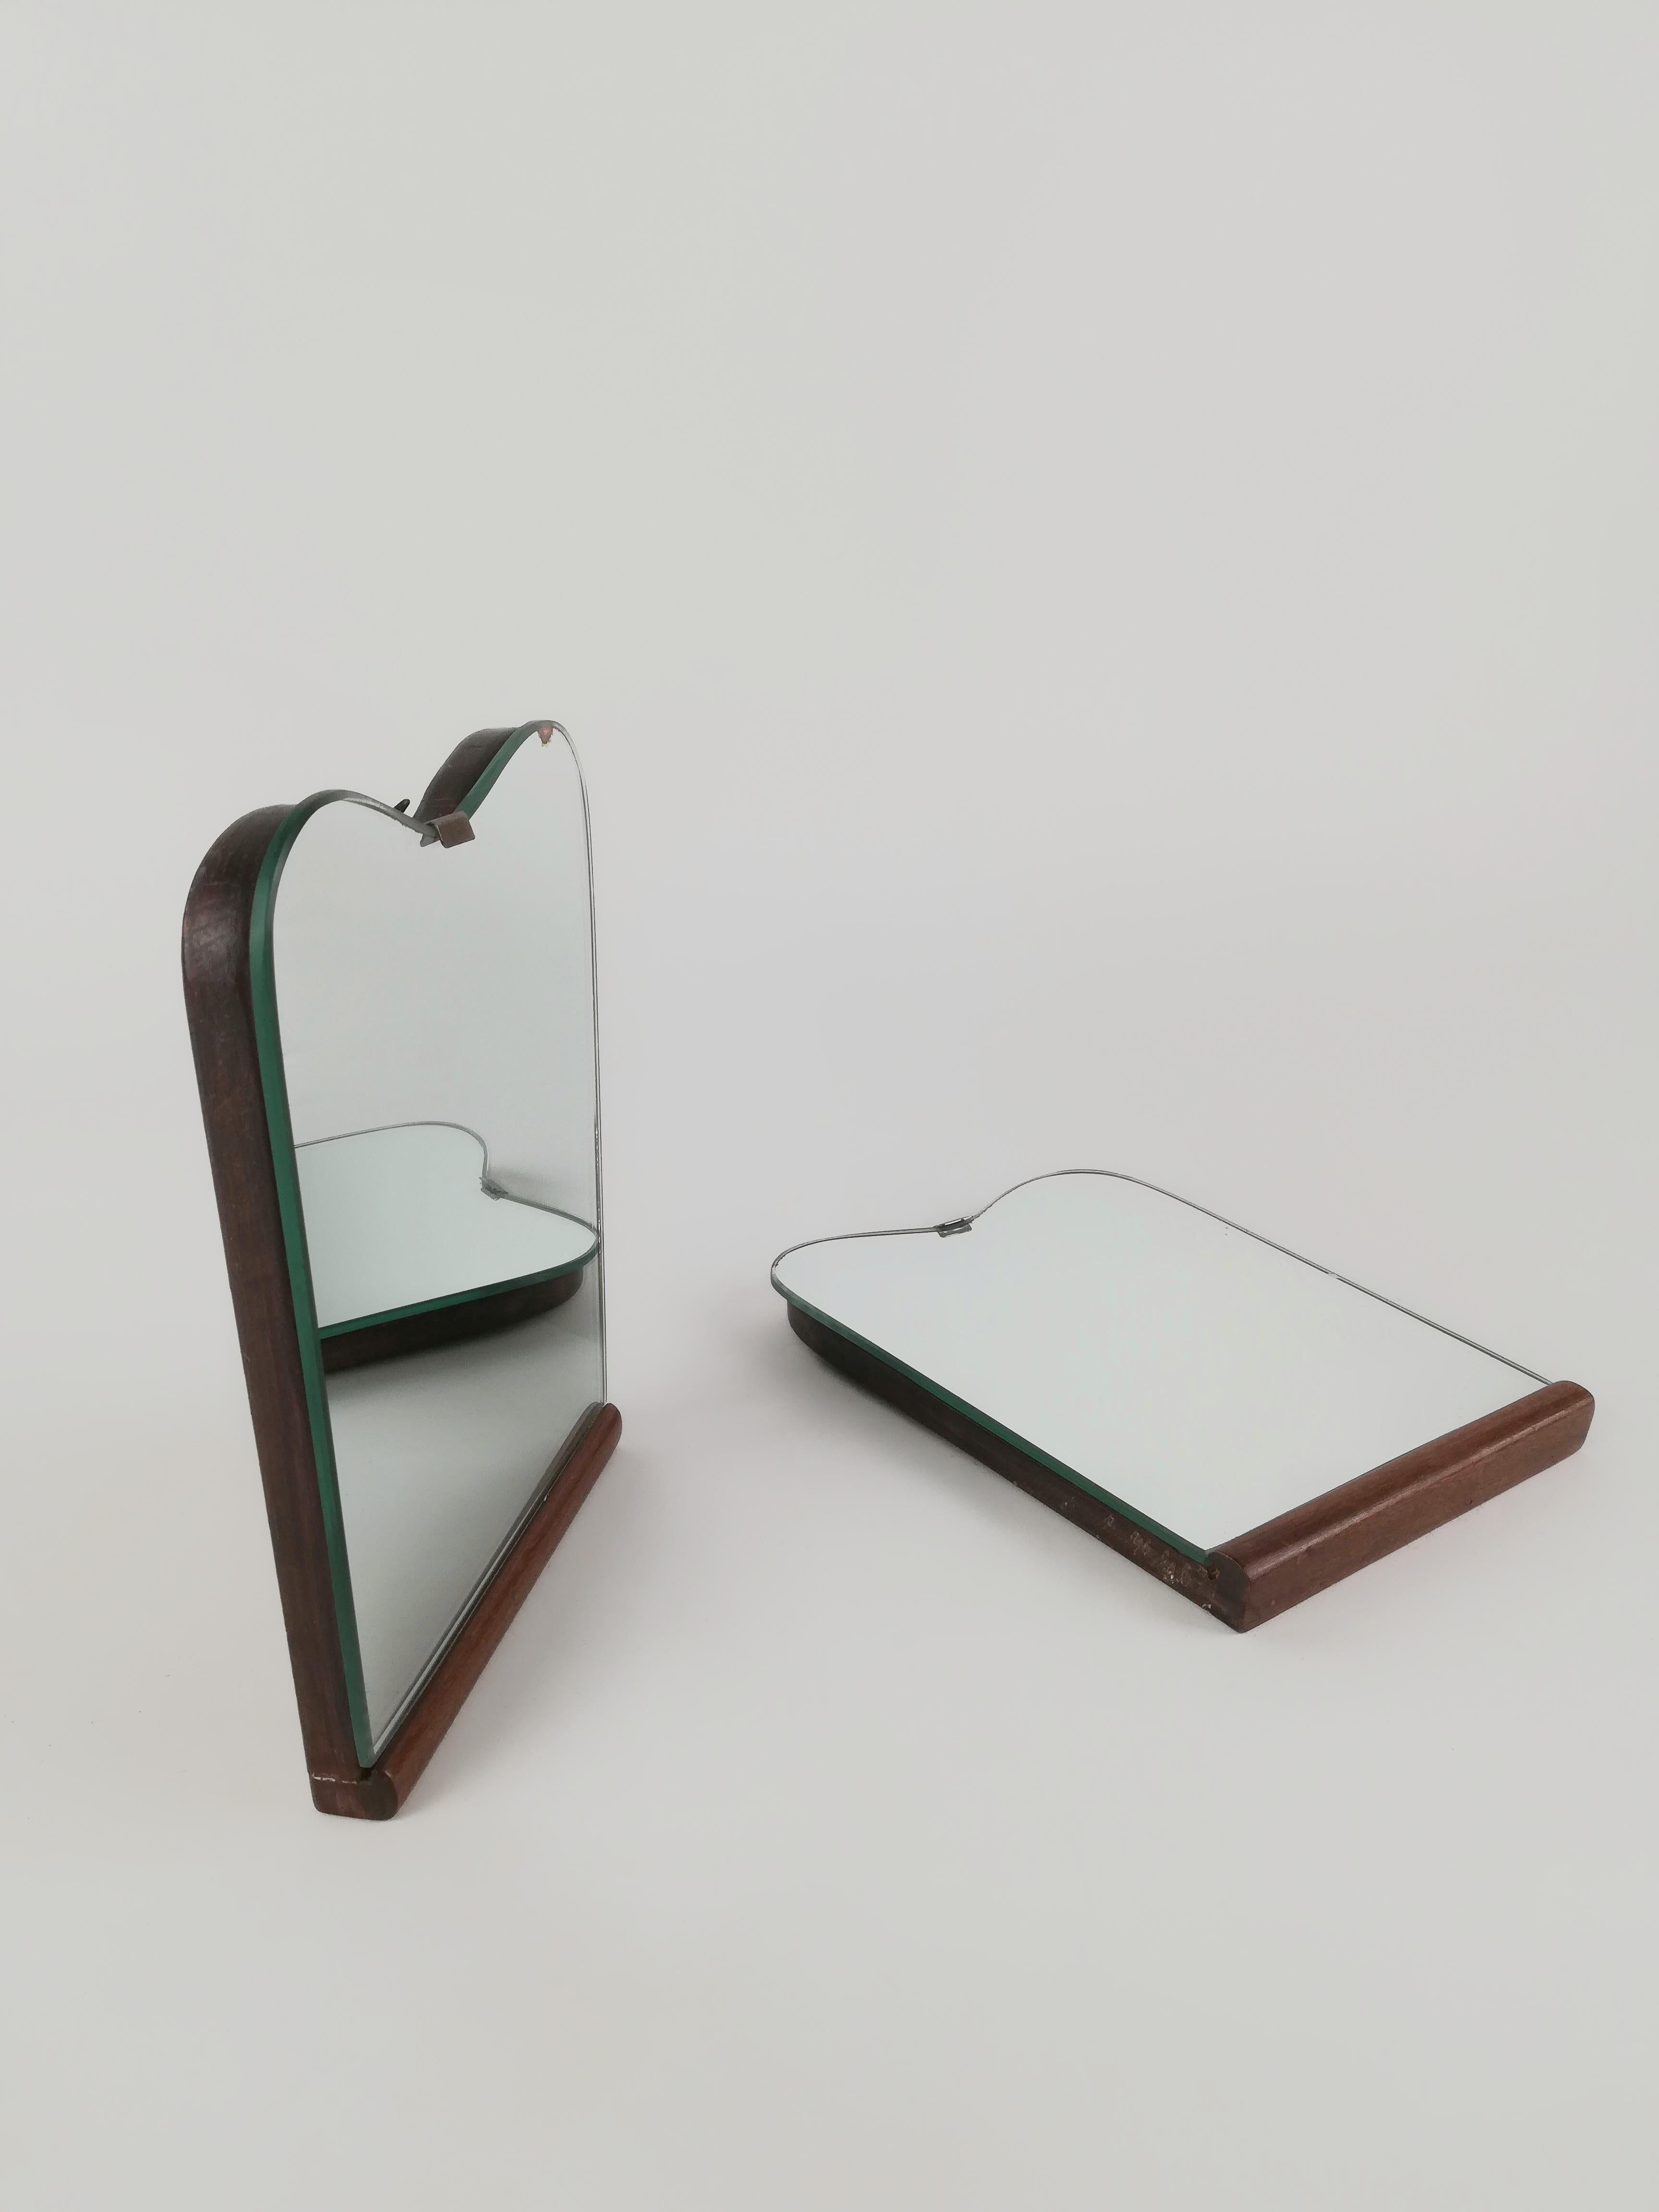 Un rare couple de miroirs vintage, datable entre les années 1930 et 1950 du 20ème siècle.
Ils ont été fabriqués en Italie et cette paire de miroirs muraux jumeaux était probablement placée au-dessus de deux tables de chevet.
Les miroirs sont